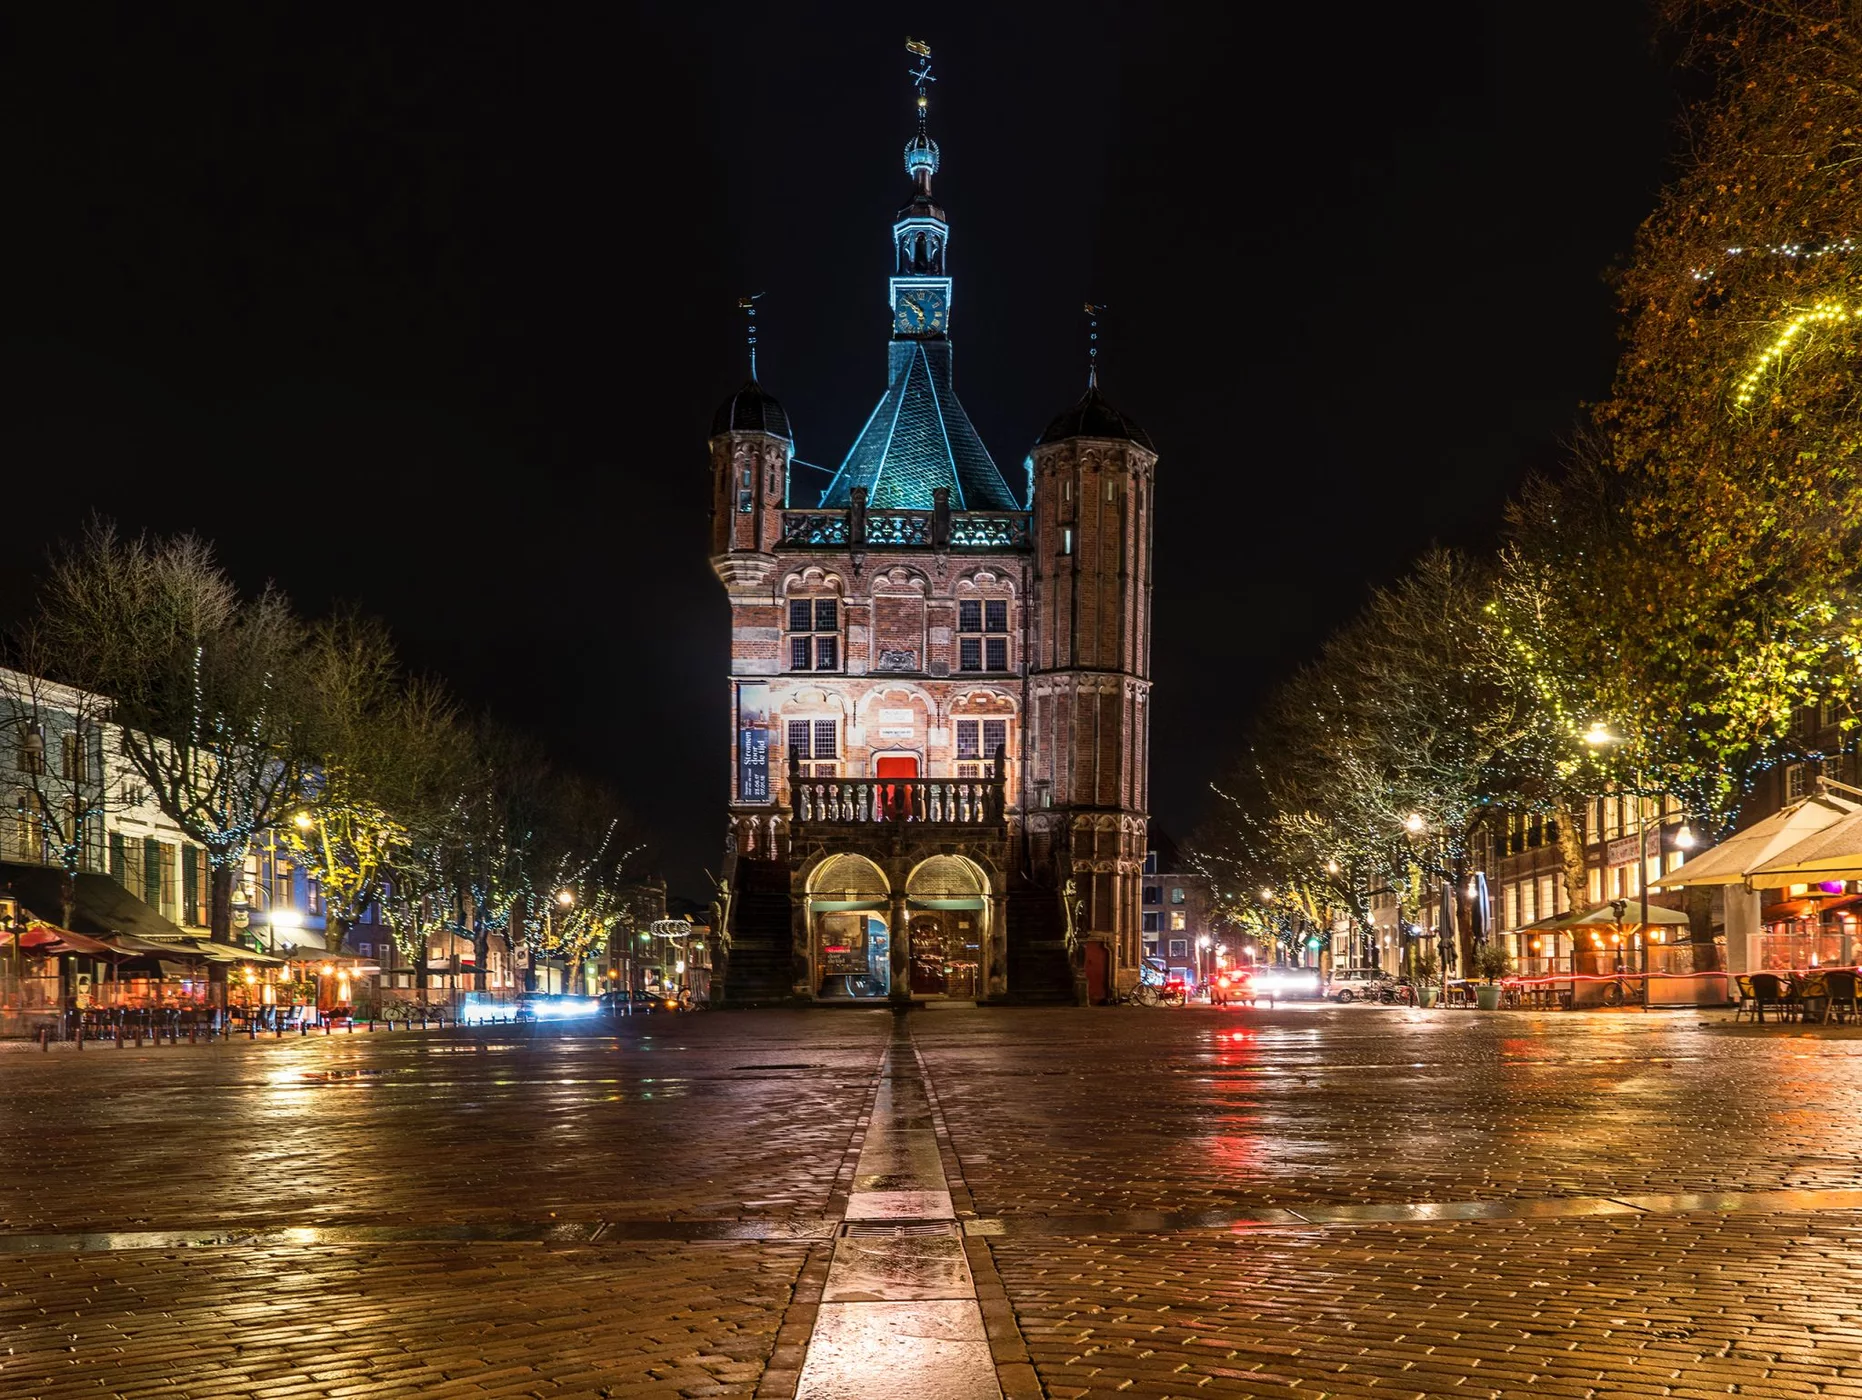 Old Town Hall De Waag in Deventer, Netherlands